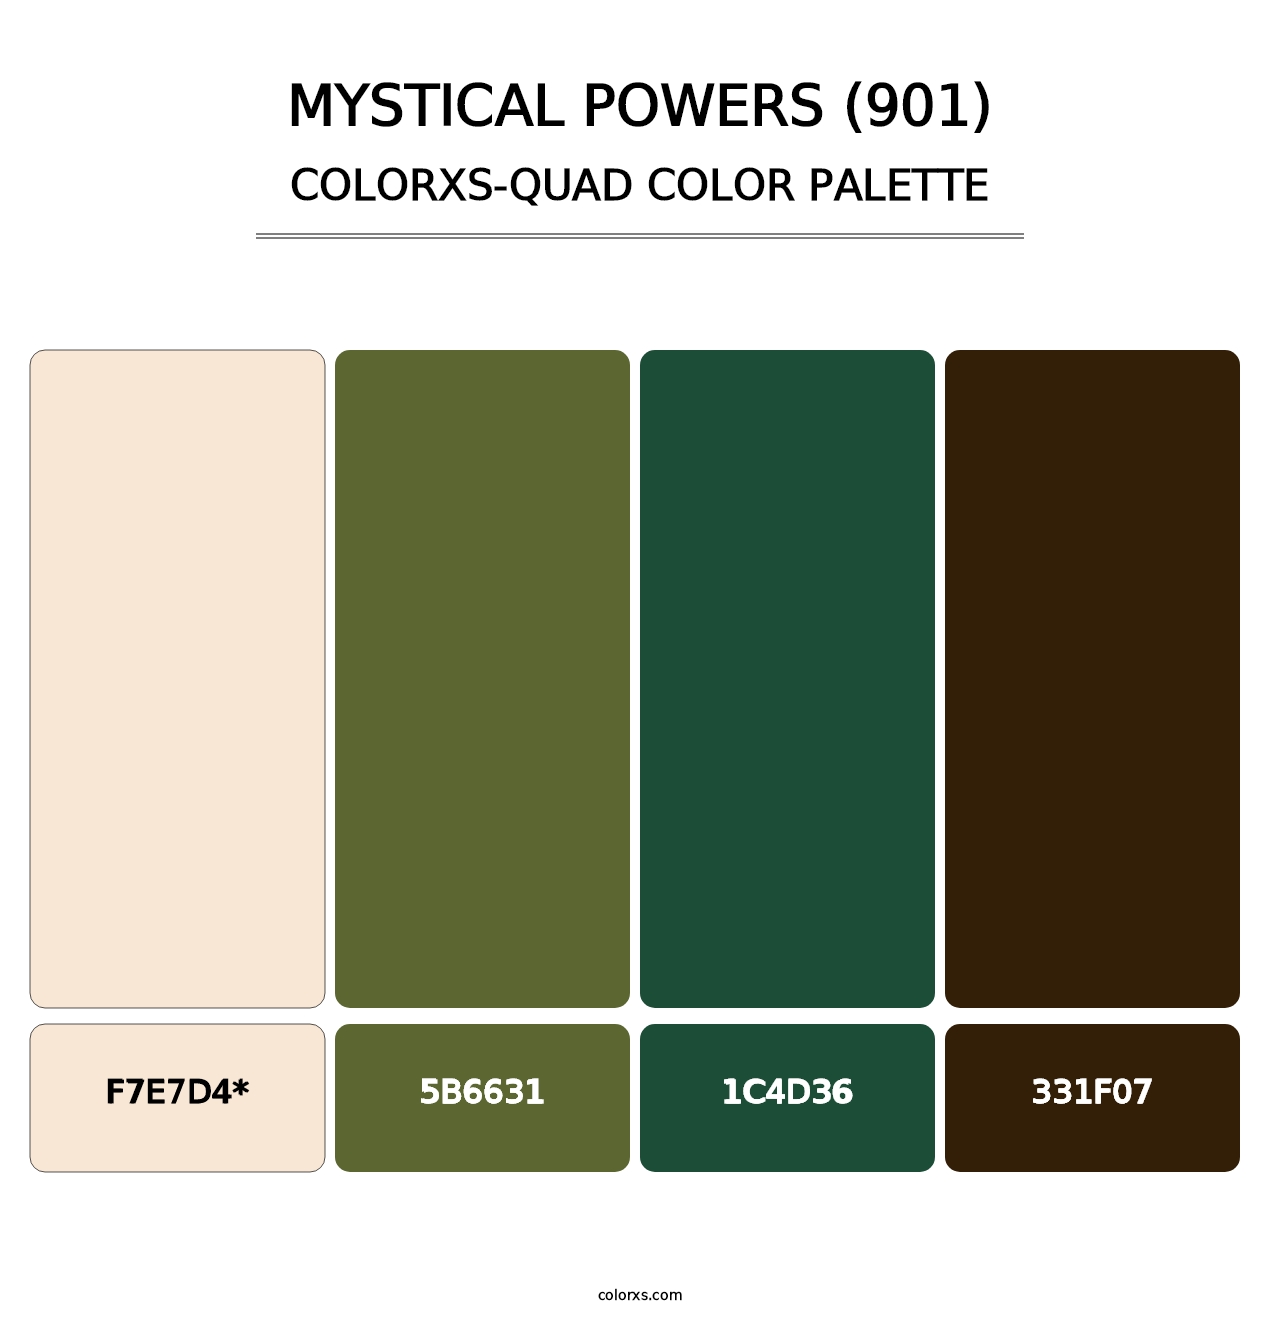 Mystical Powers (901) - Colorxs Quad Palette